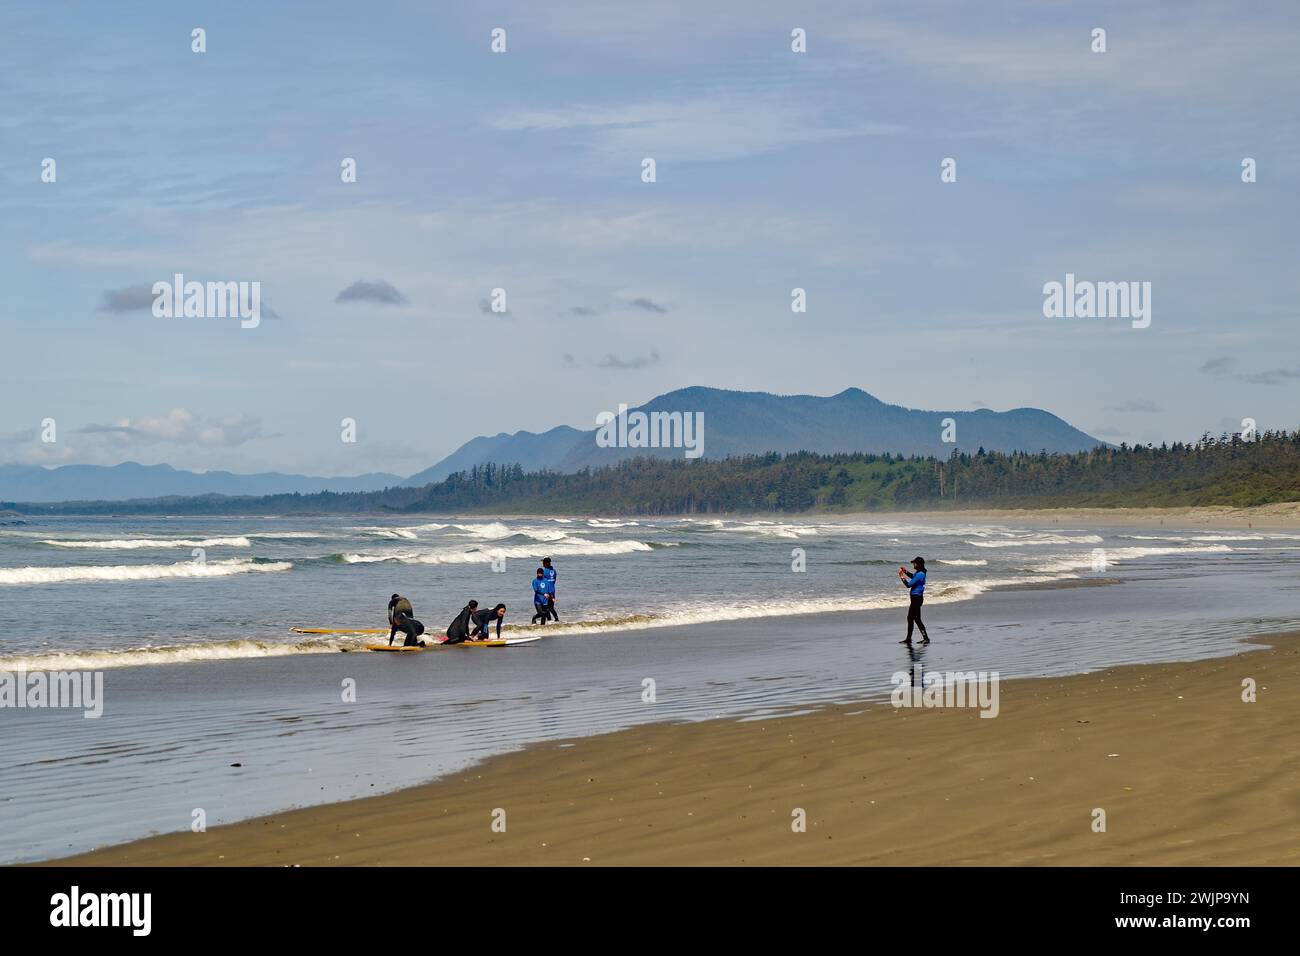 Surfisti su una spiaggia sabbiosa, onde e onde, Vancouver Island, Long Beach, Paciifc Rim National Park, British Columbia, Canada Foto Stock